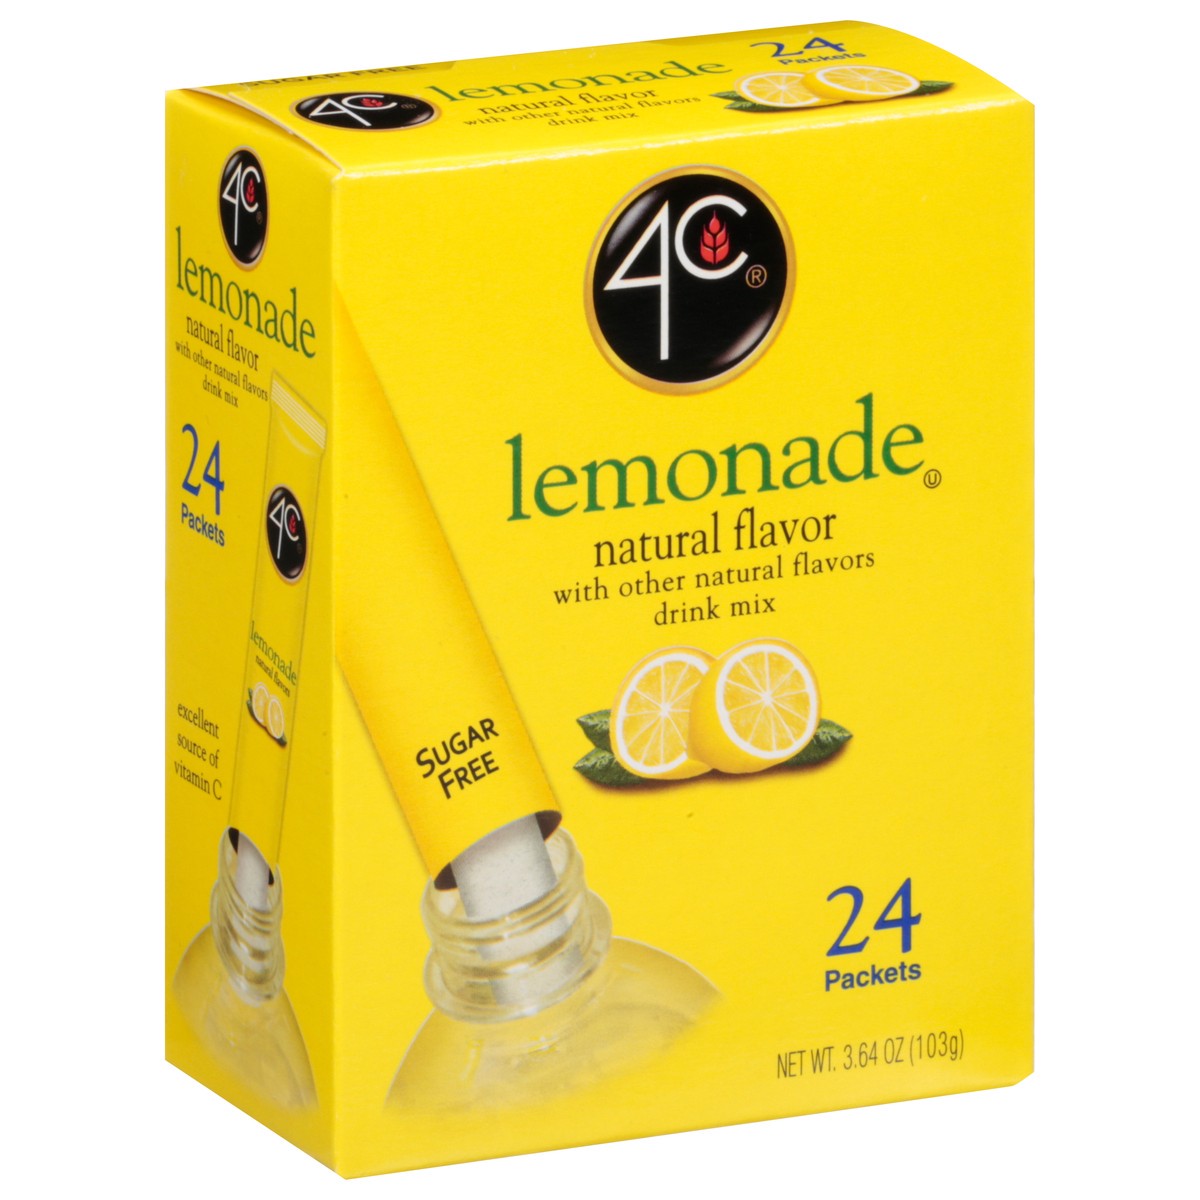 slide 10 of 14, 4C Drink Mix Sgr/Free Lemonade 24Ct, 24/3.64o